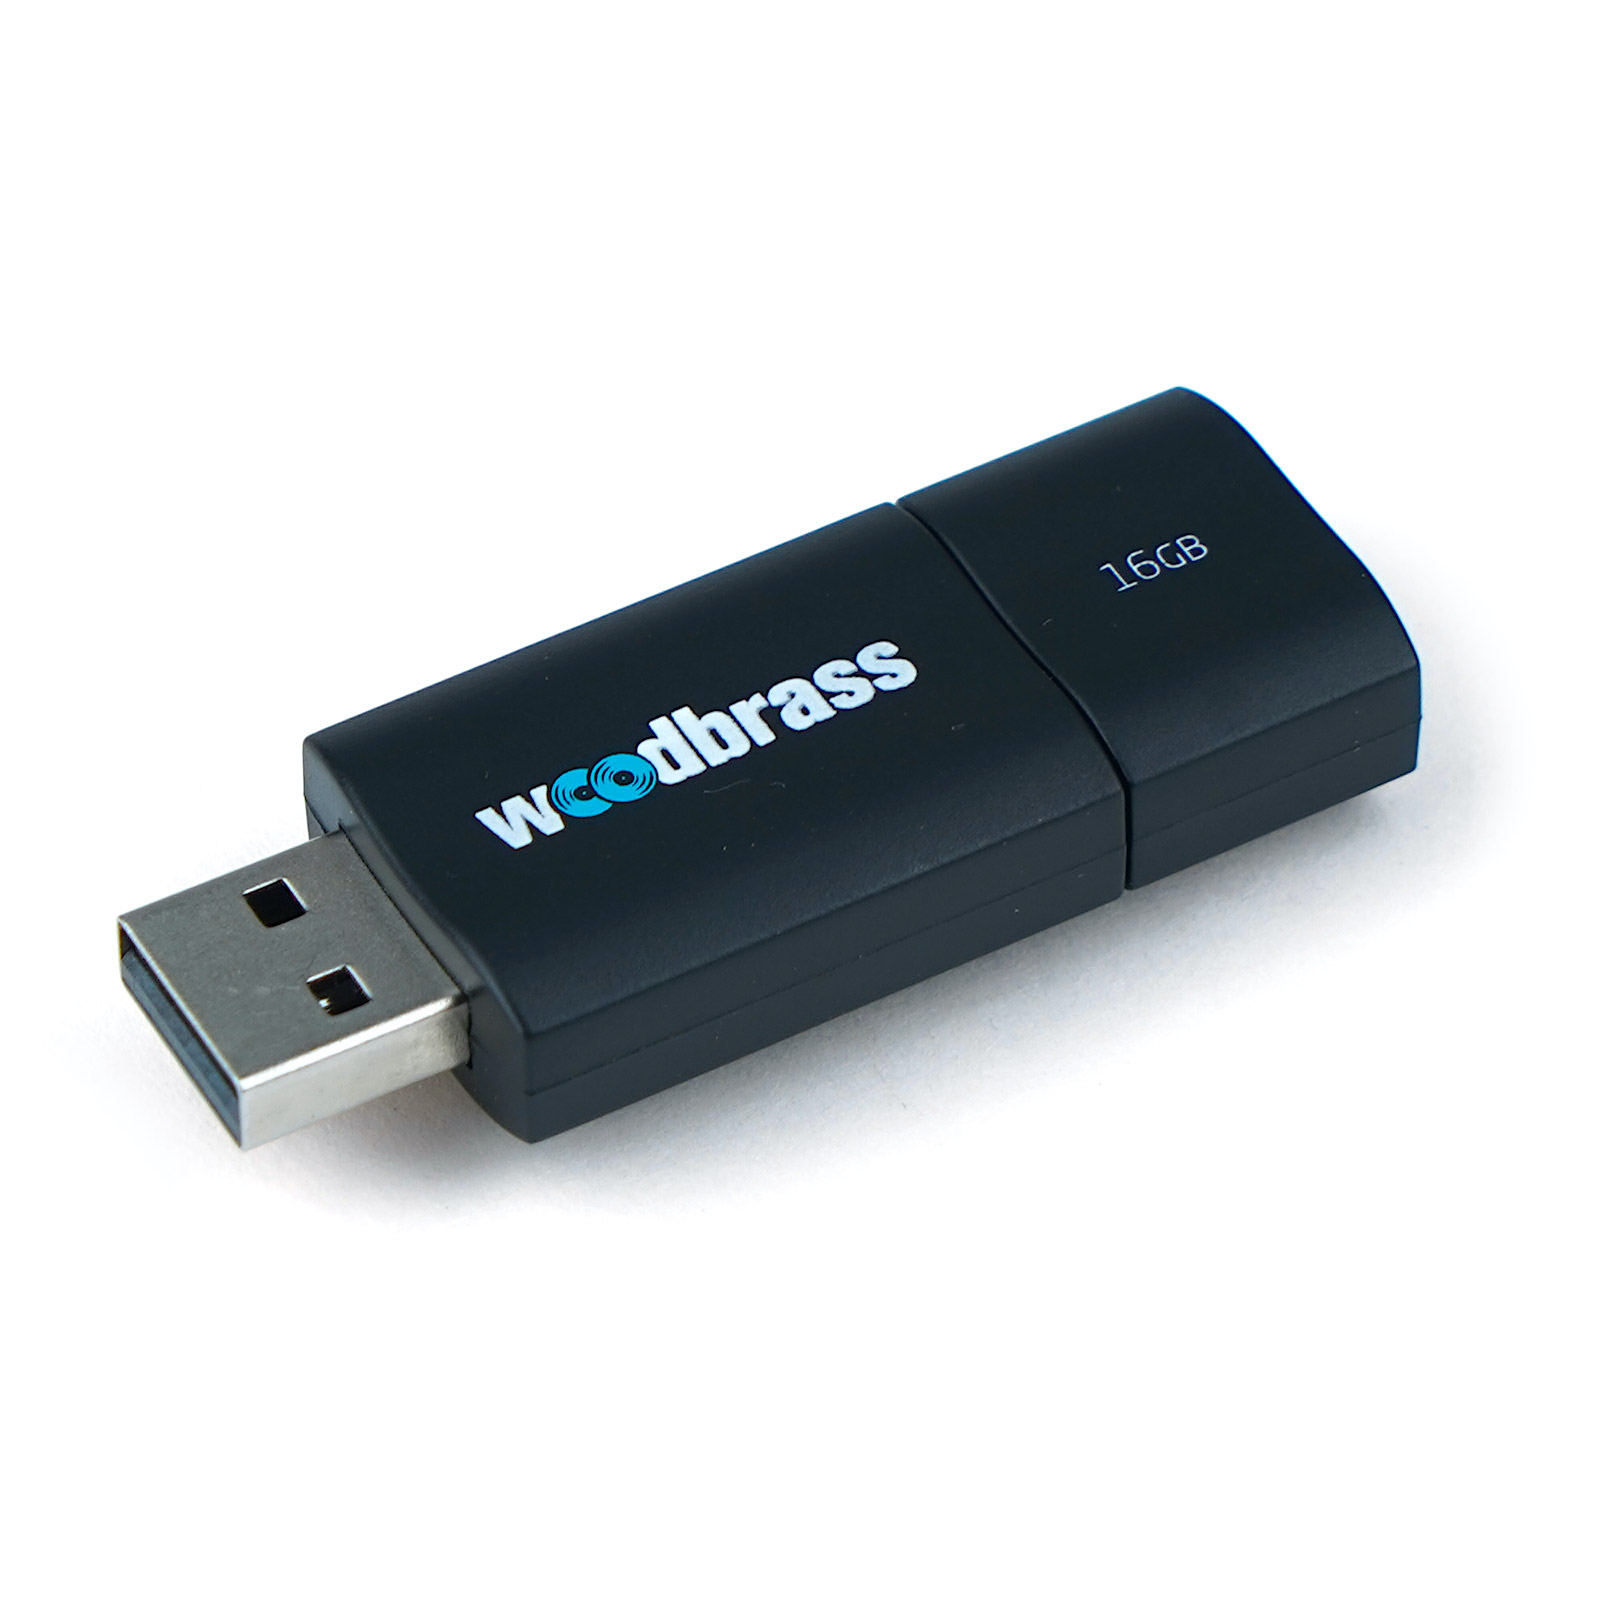 WOODBRASS USB KEY 16GB